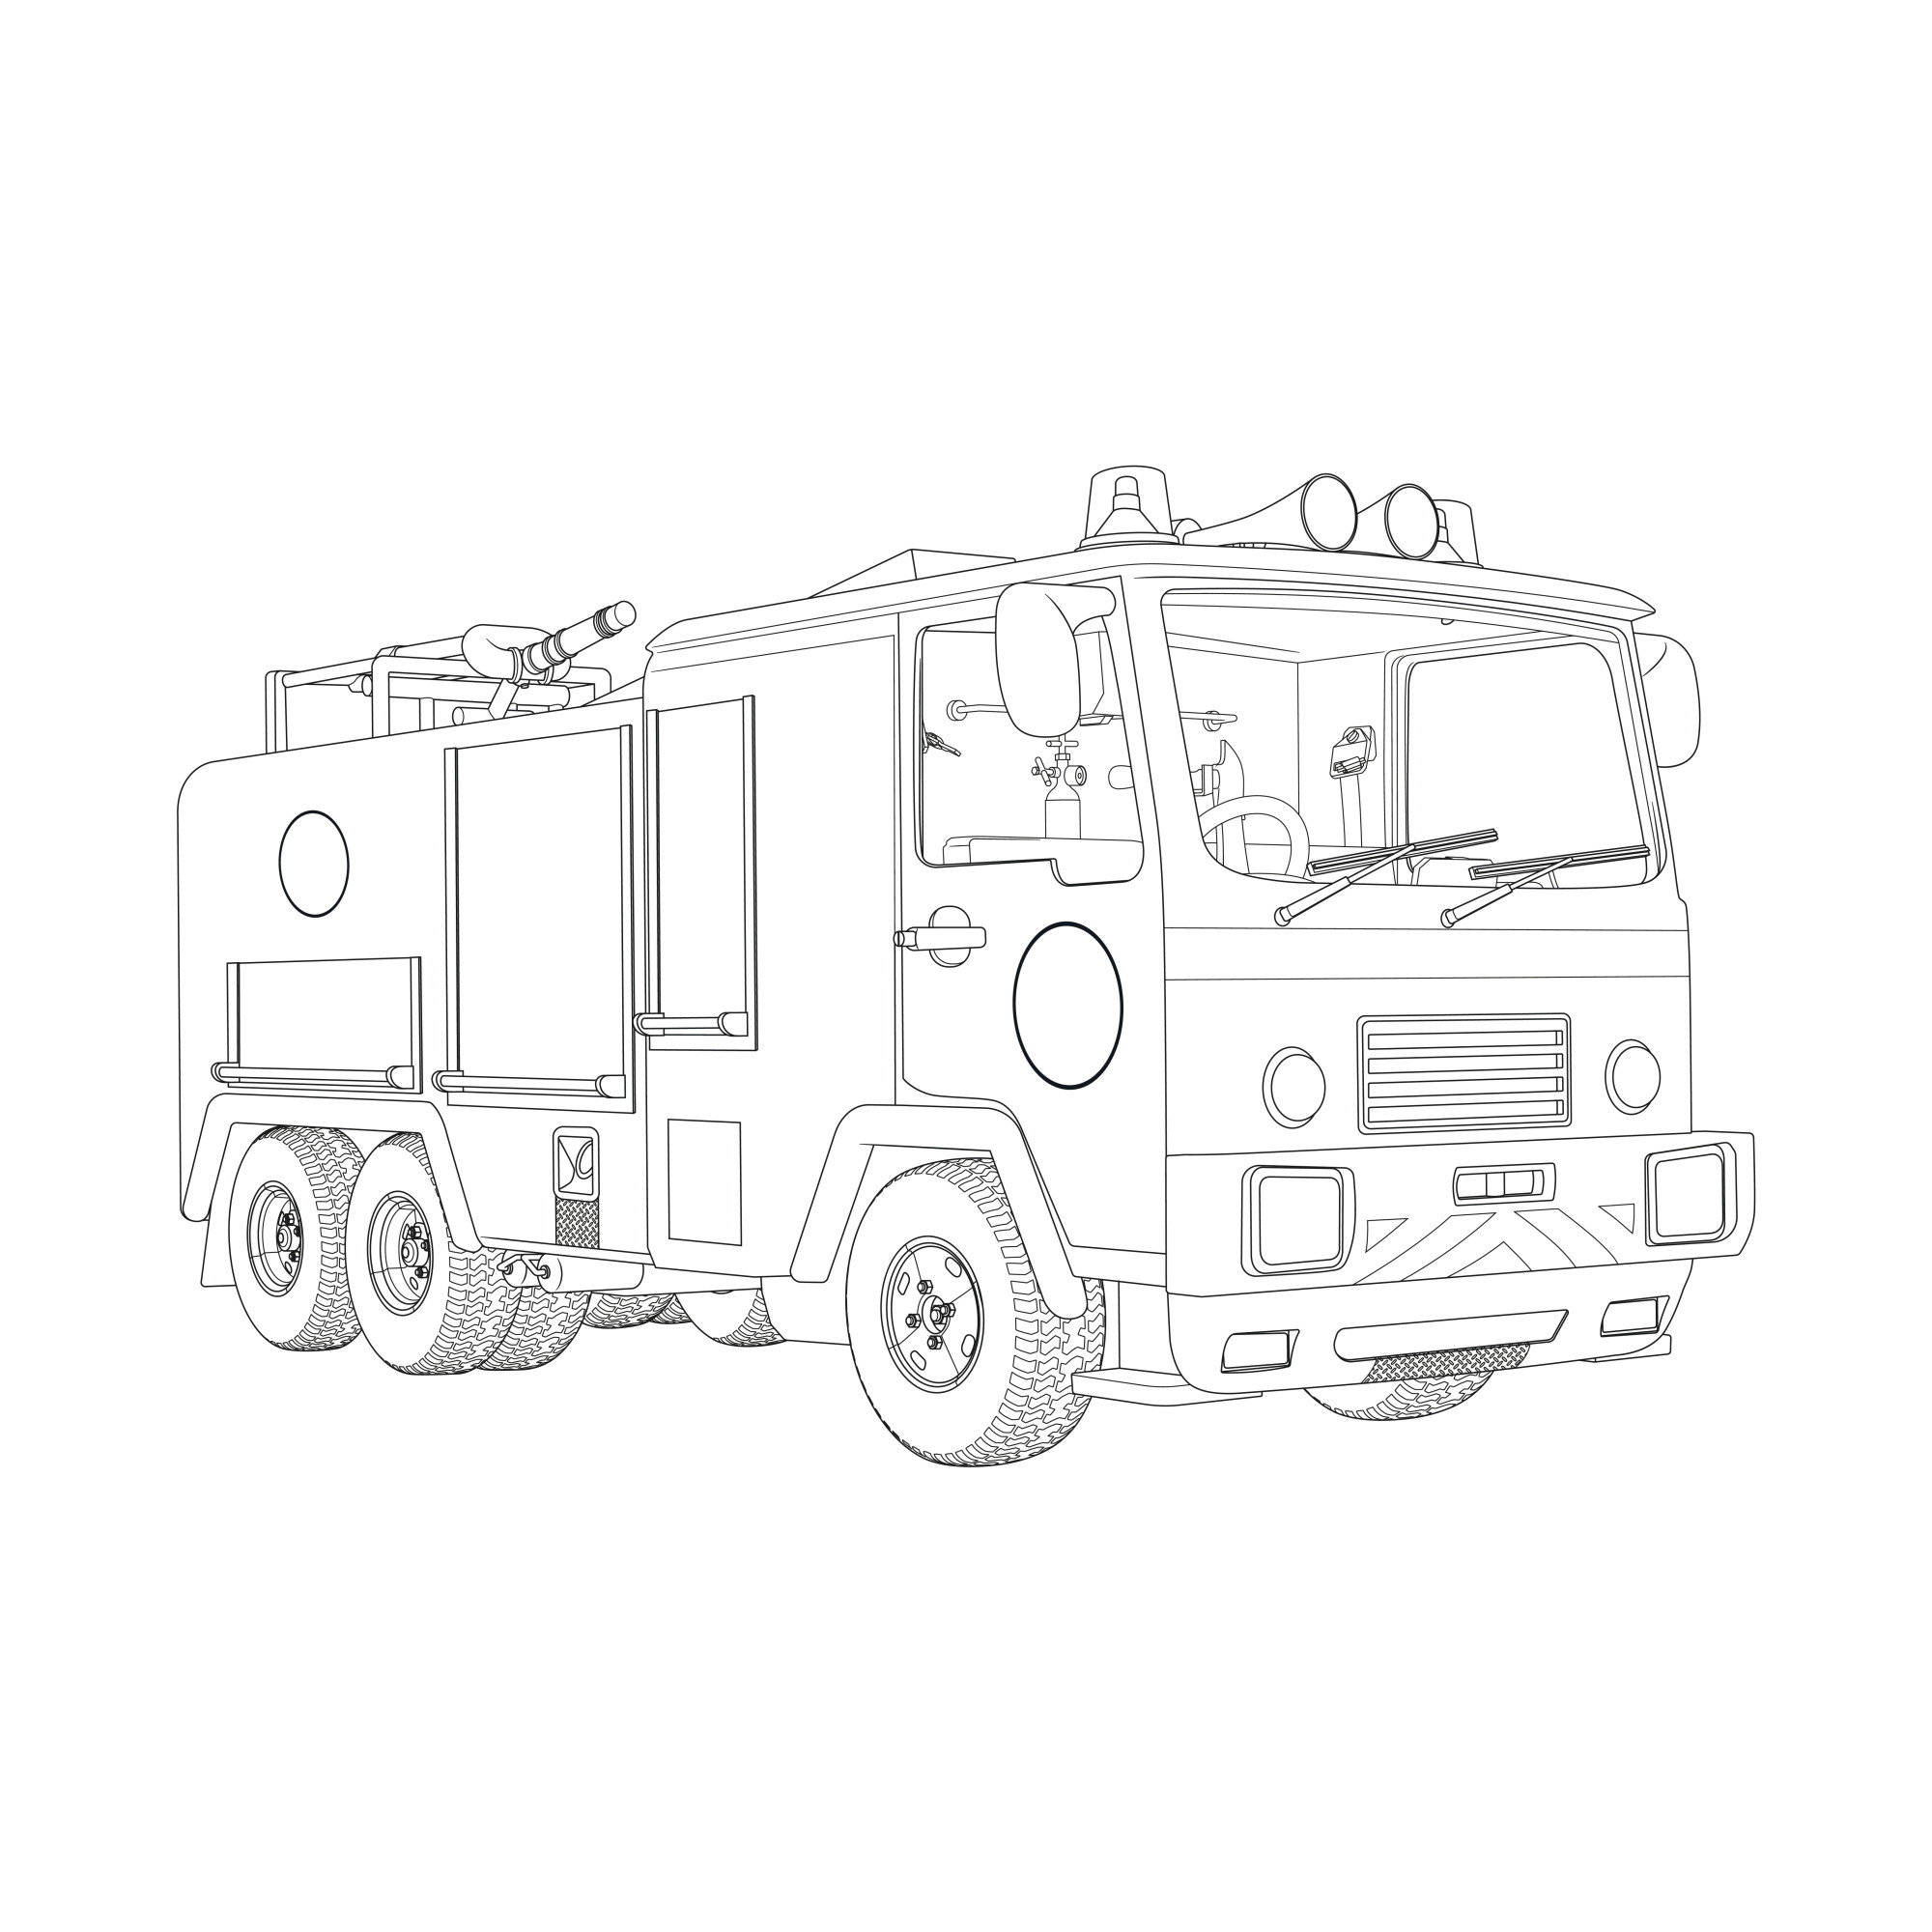 Раскраска для детей: пожарный транспорт